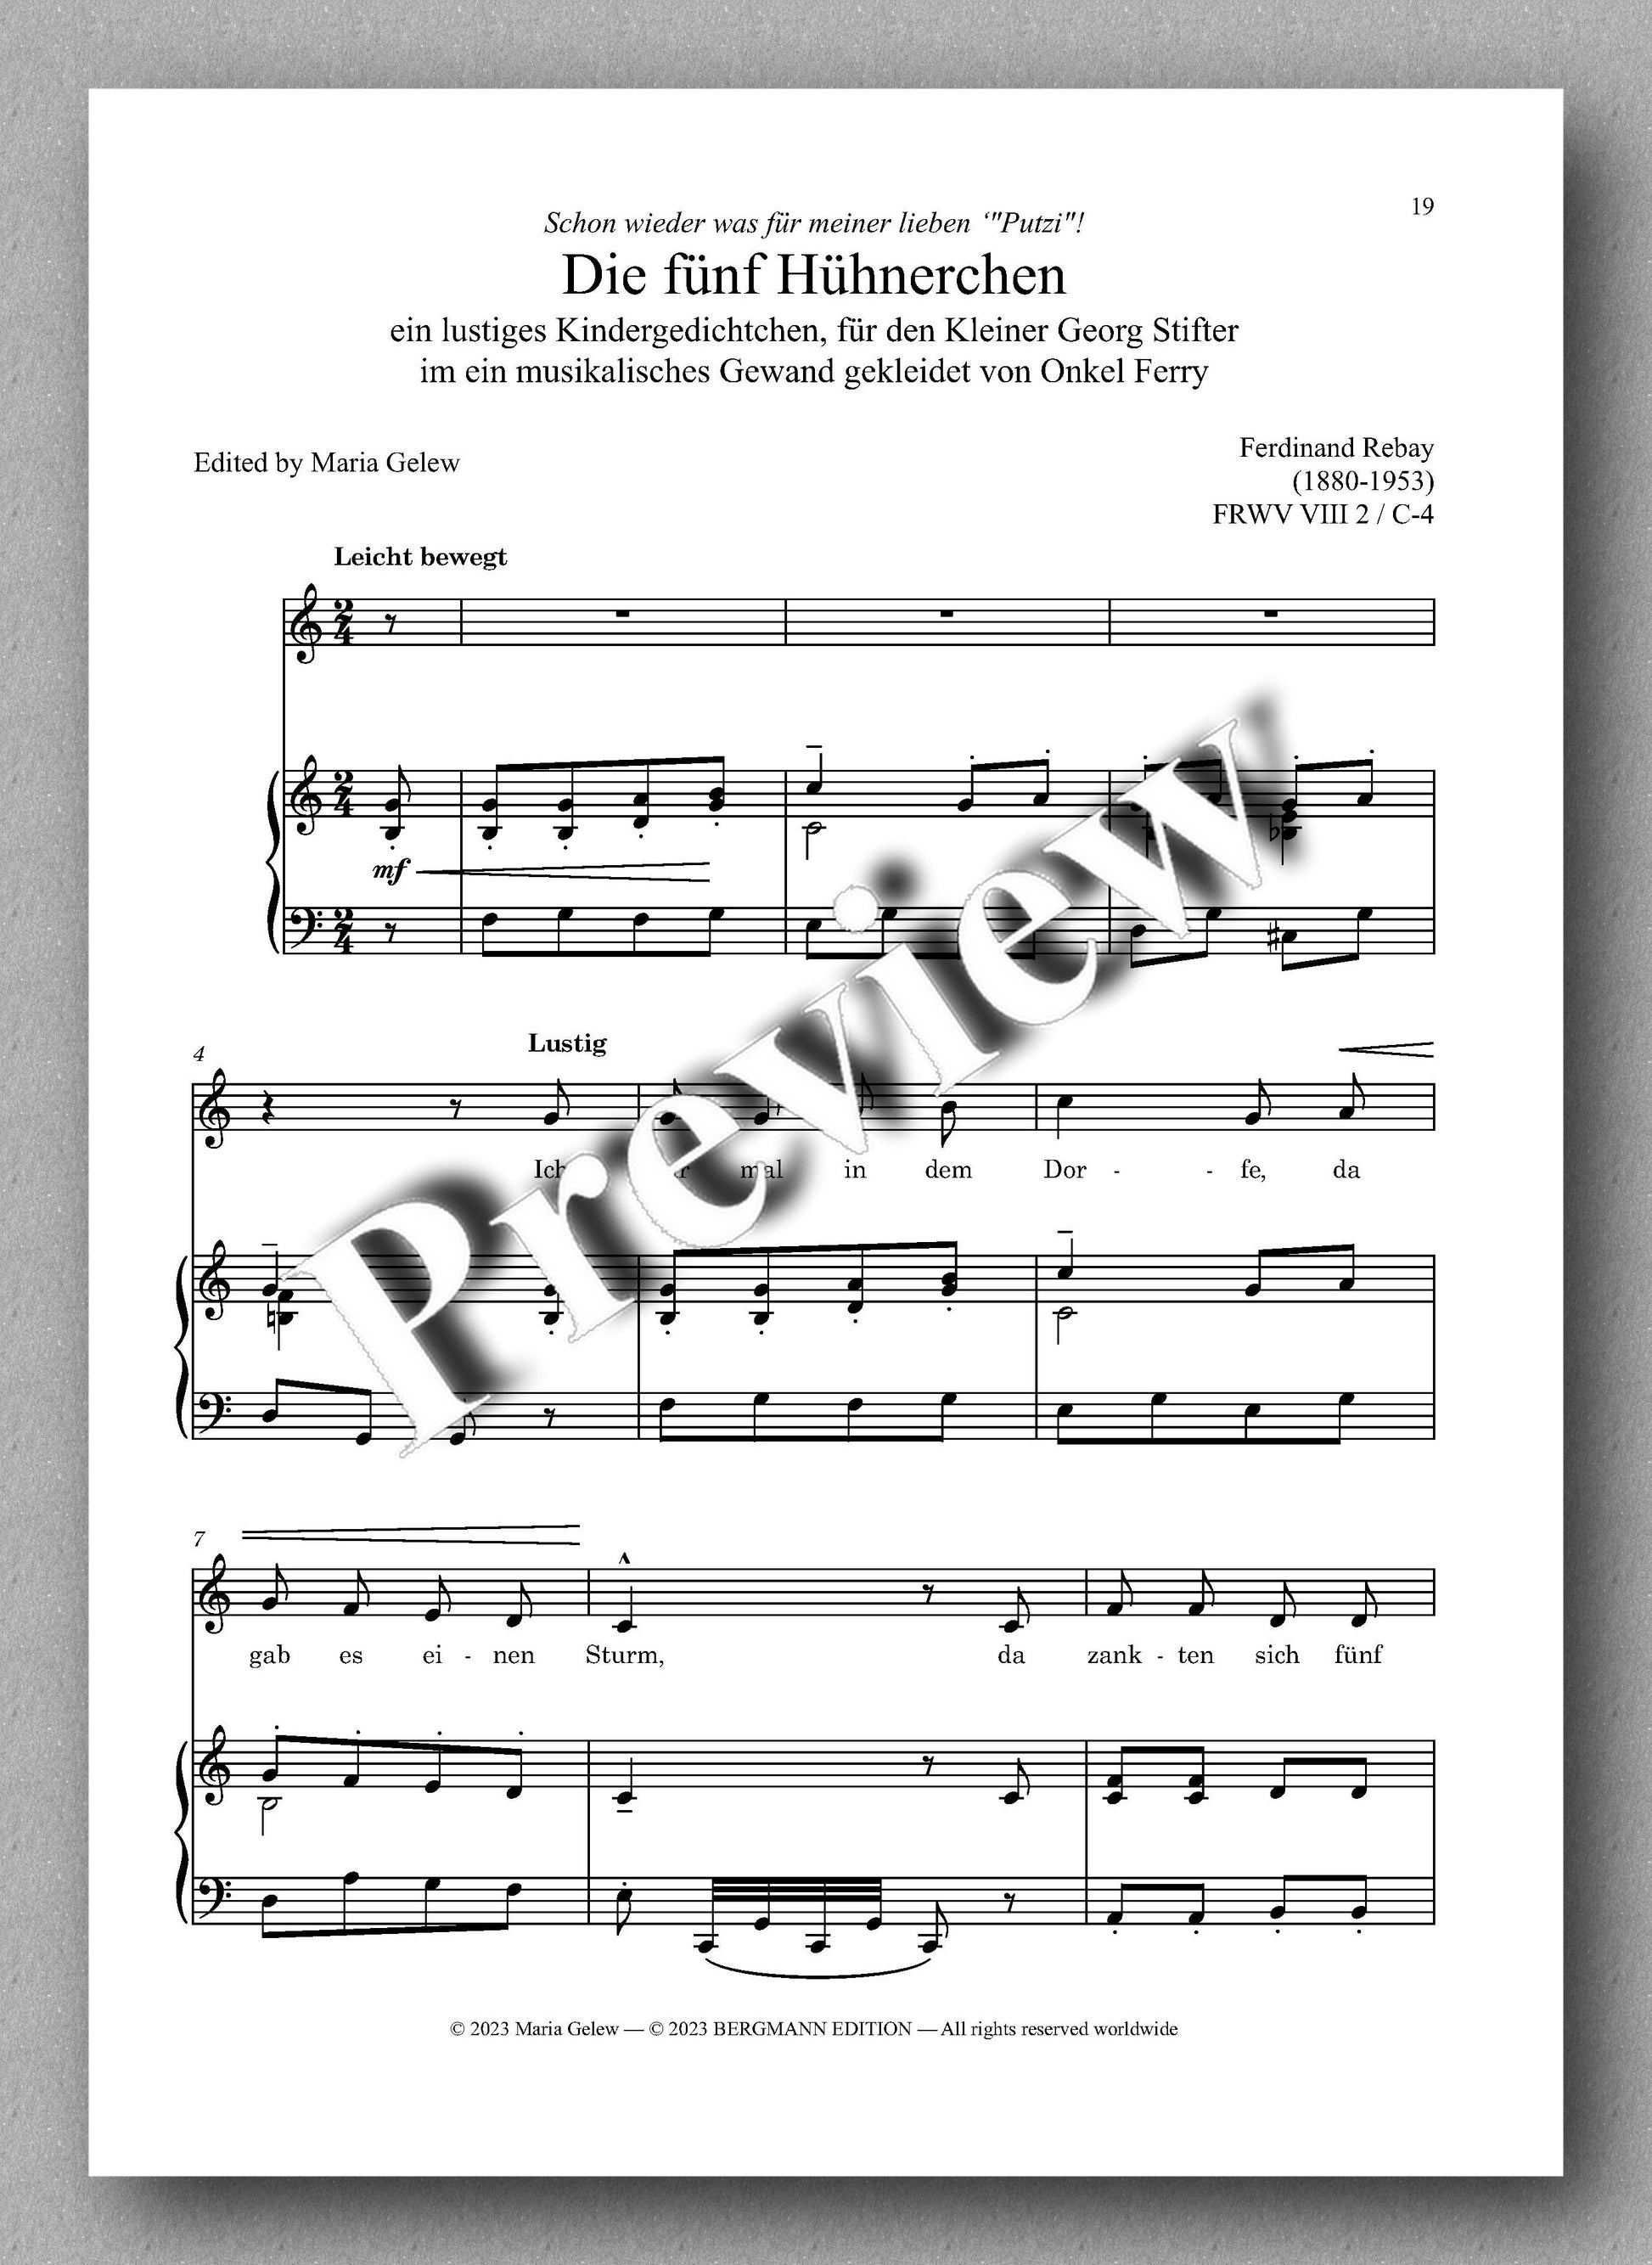 Ferdinand Rebay, Kinderlieder mit Klavierbegleitung - preview of the music score 4